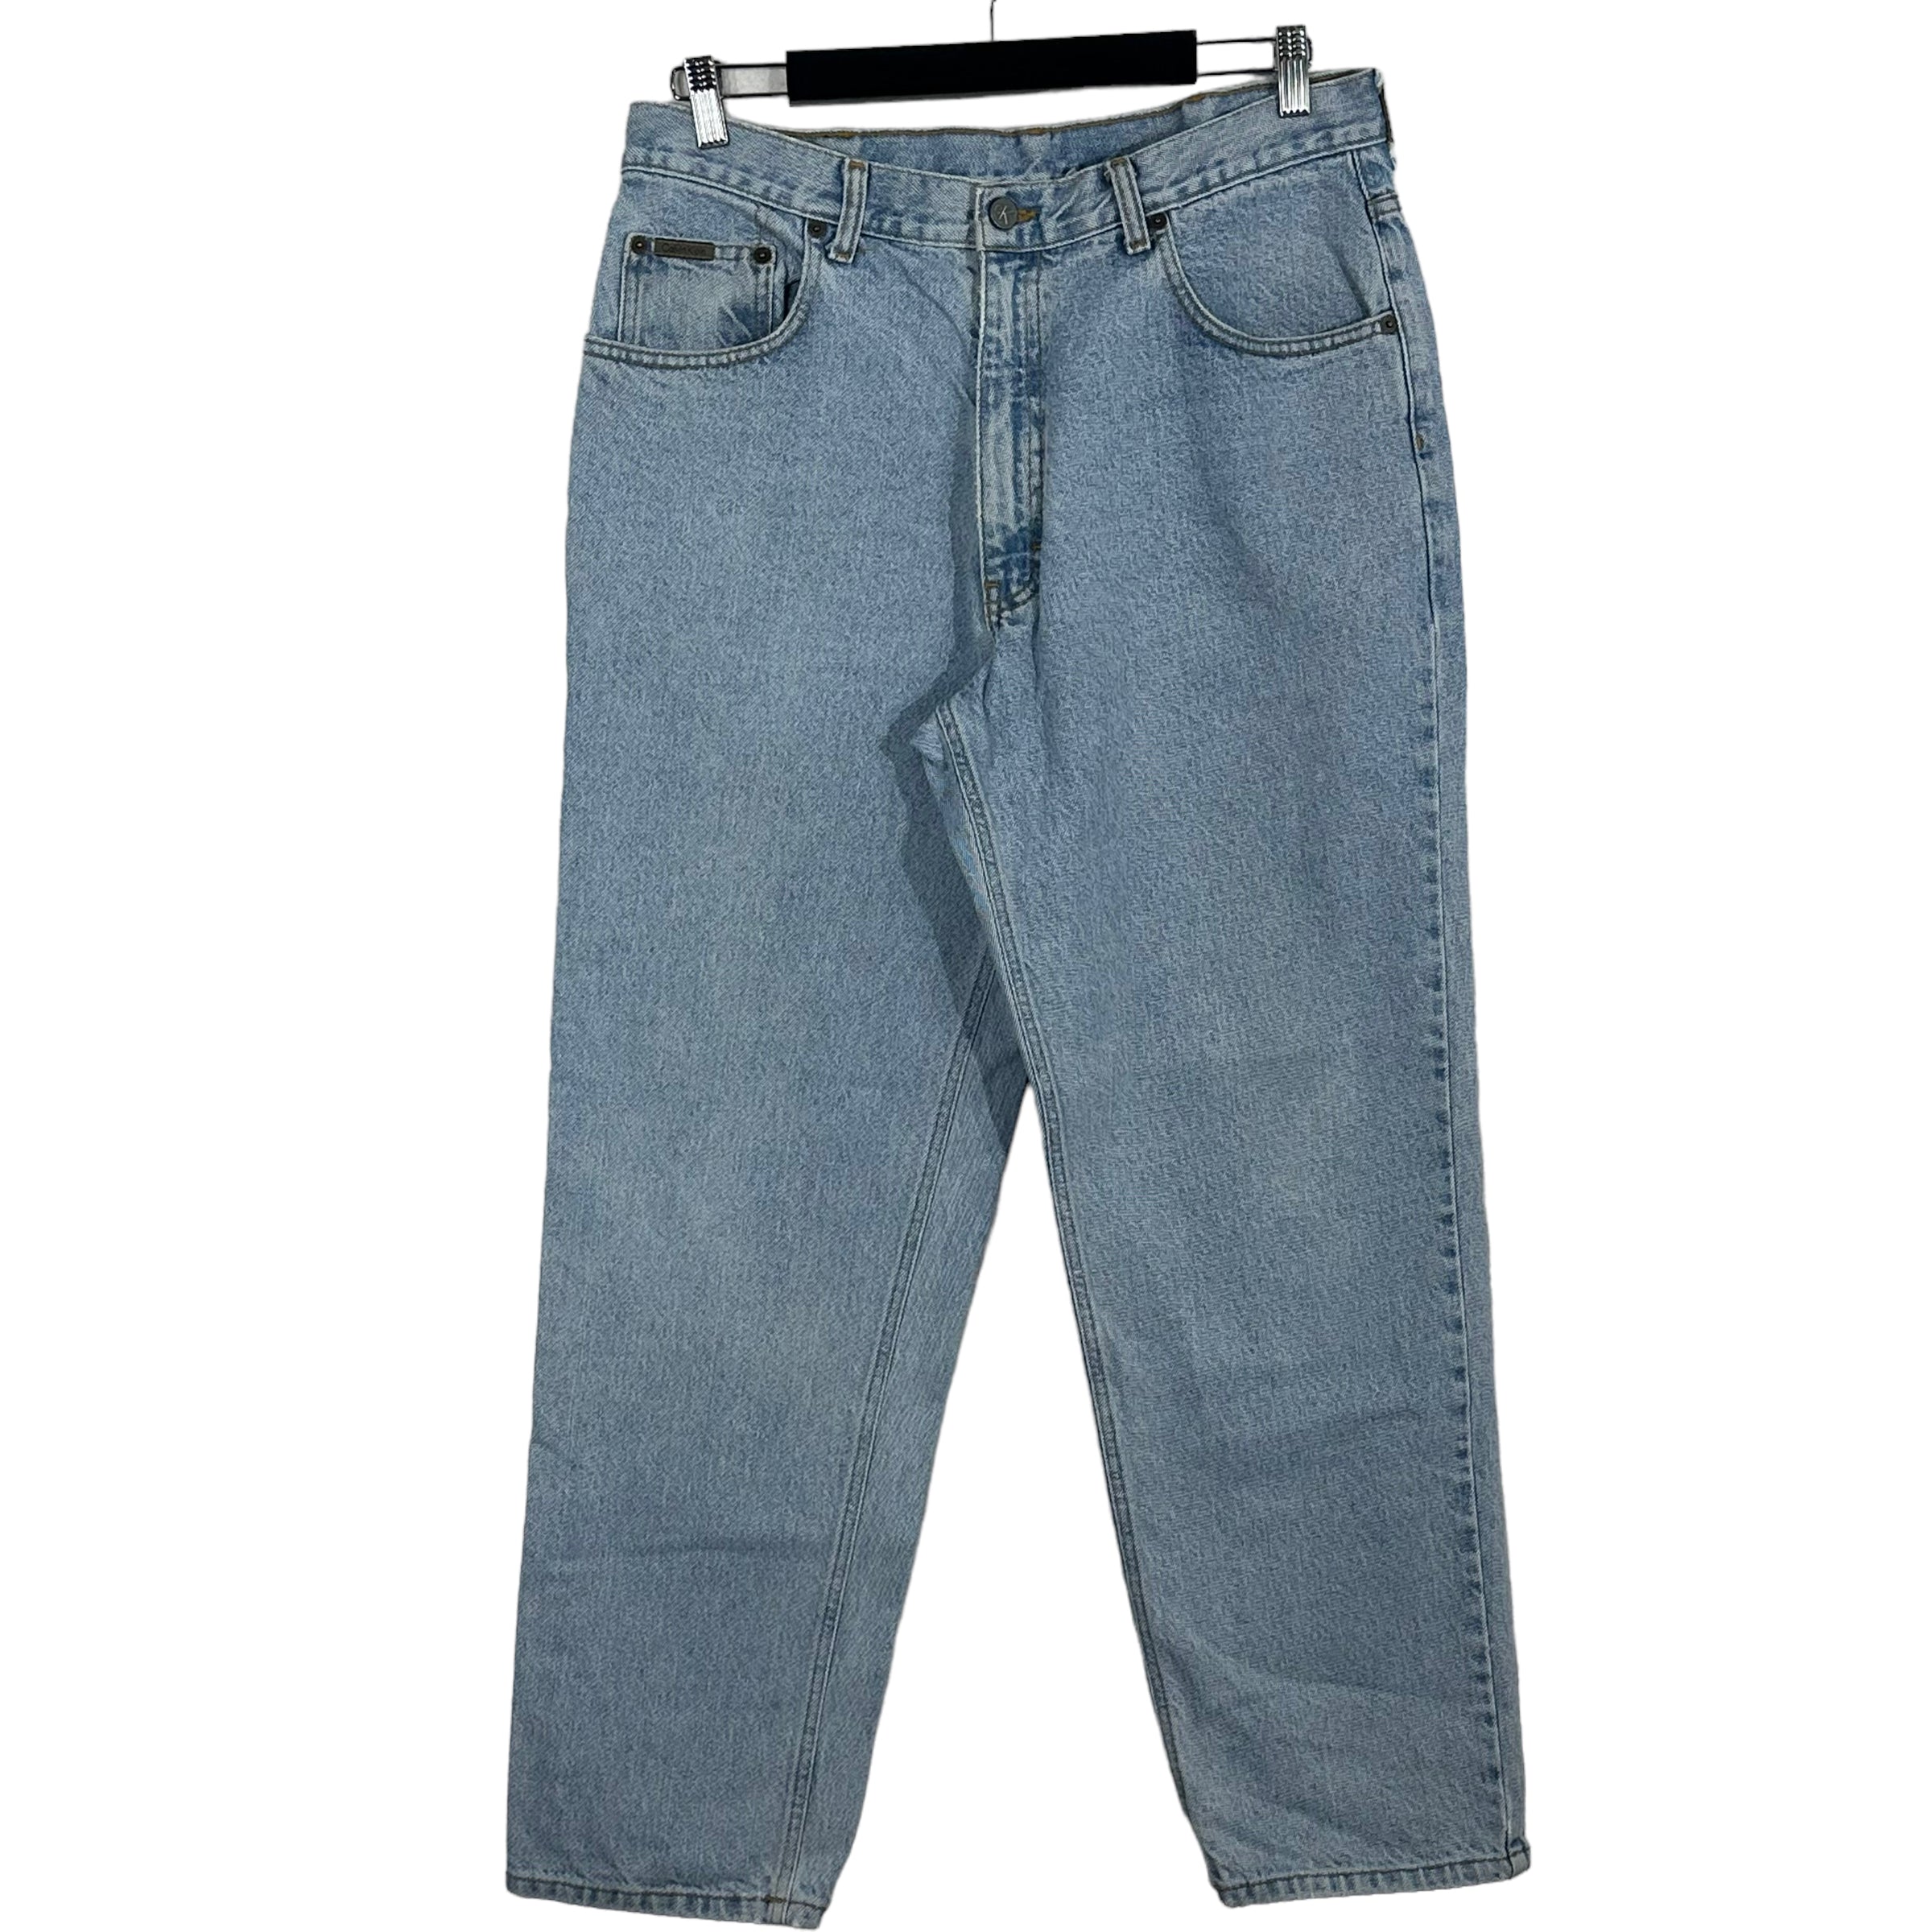 Vintage Calvin Klein Light Wash Straight Leg Denim Jeans